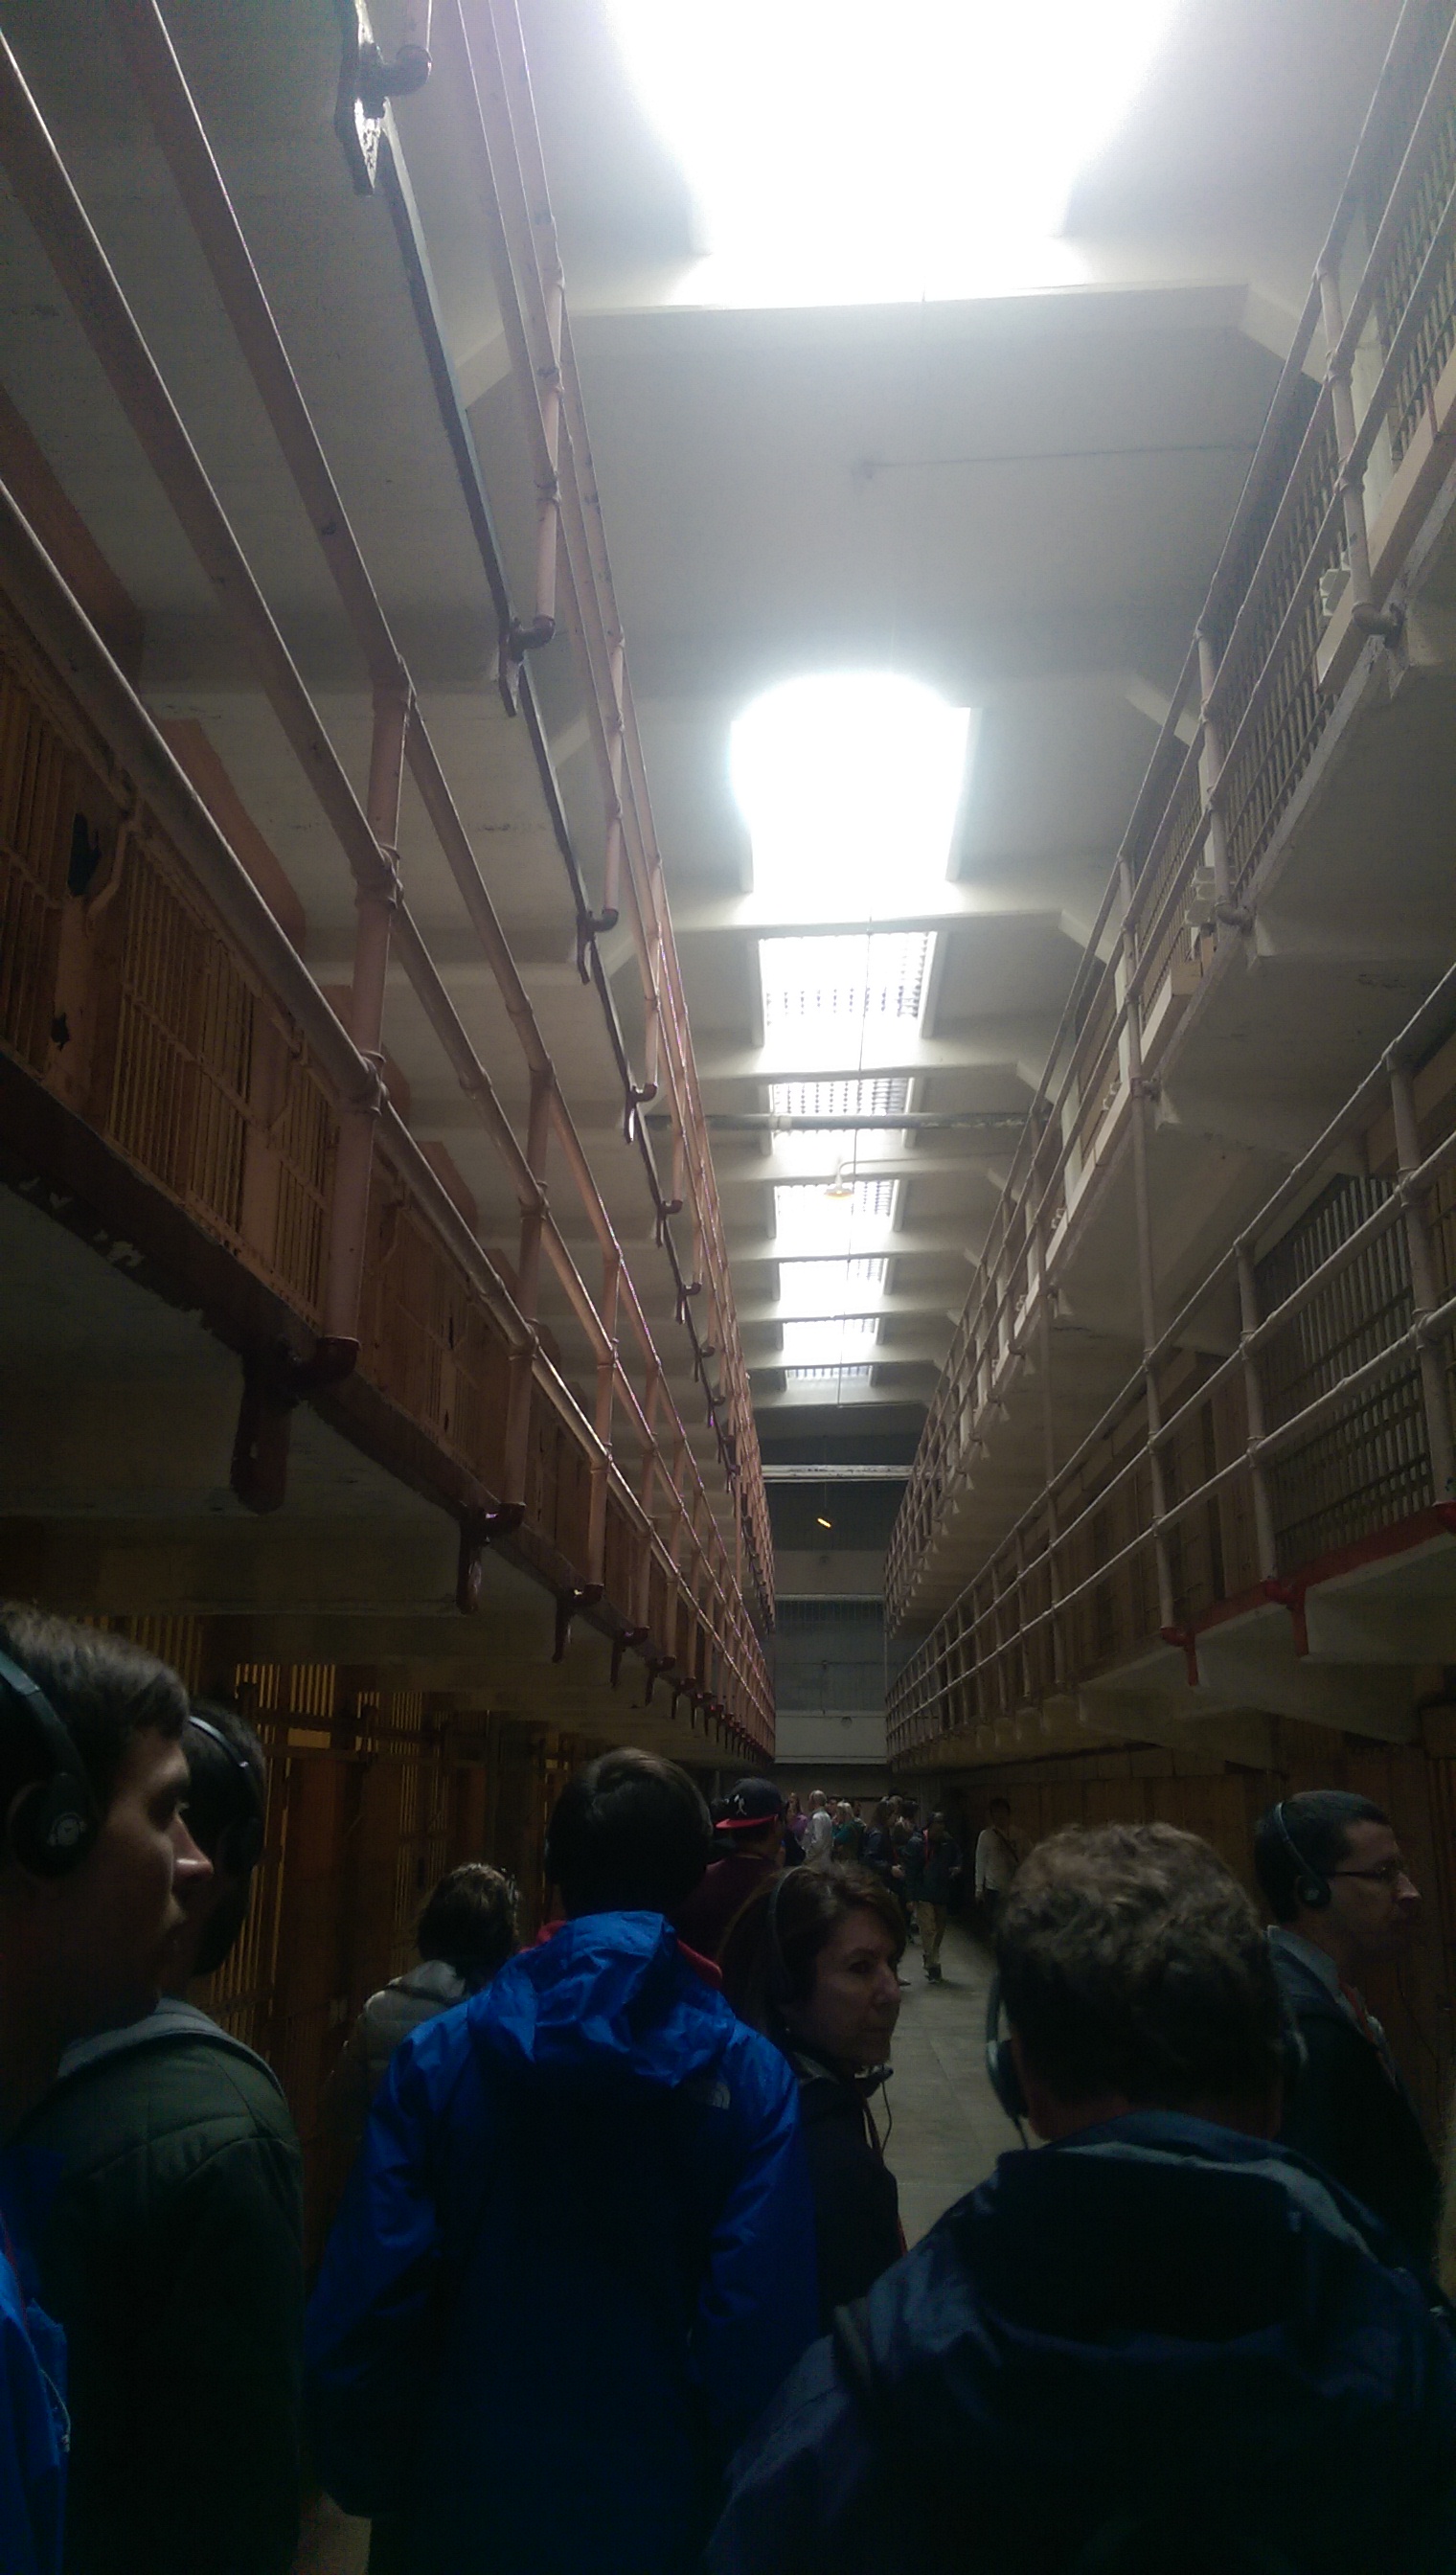 这片监狱共有3层，每层都是类似的布置